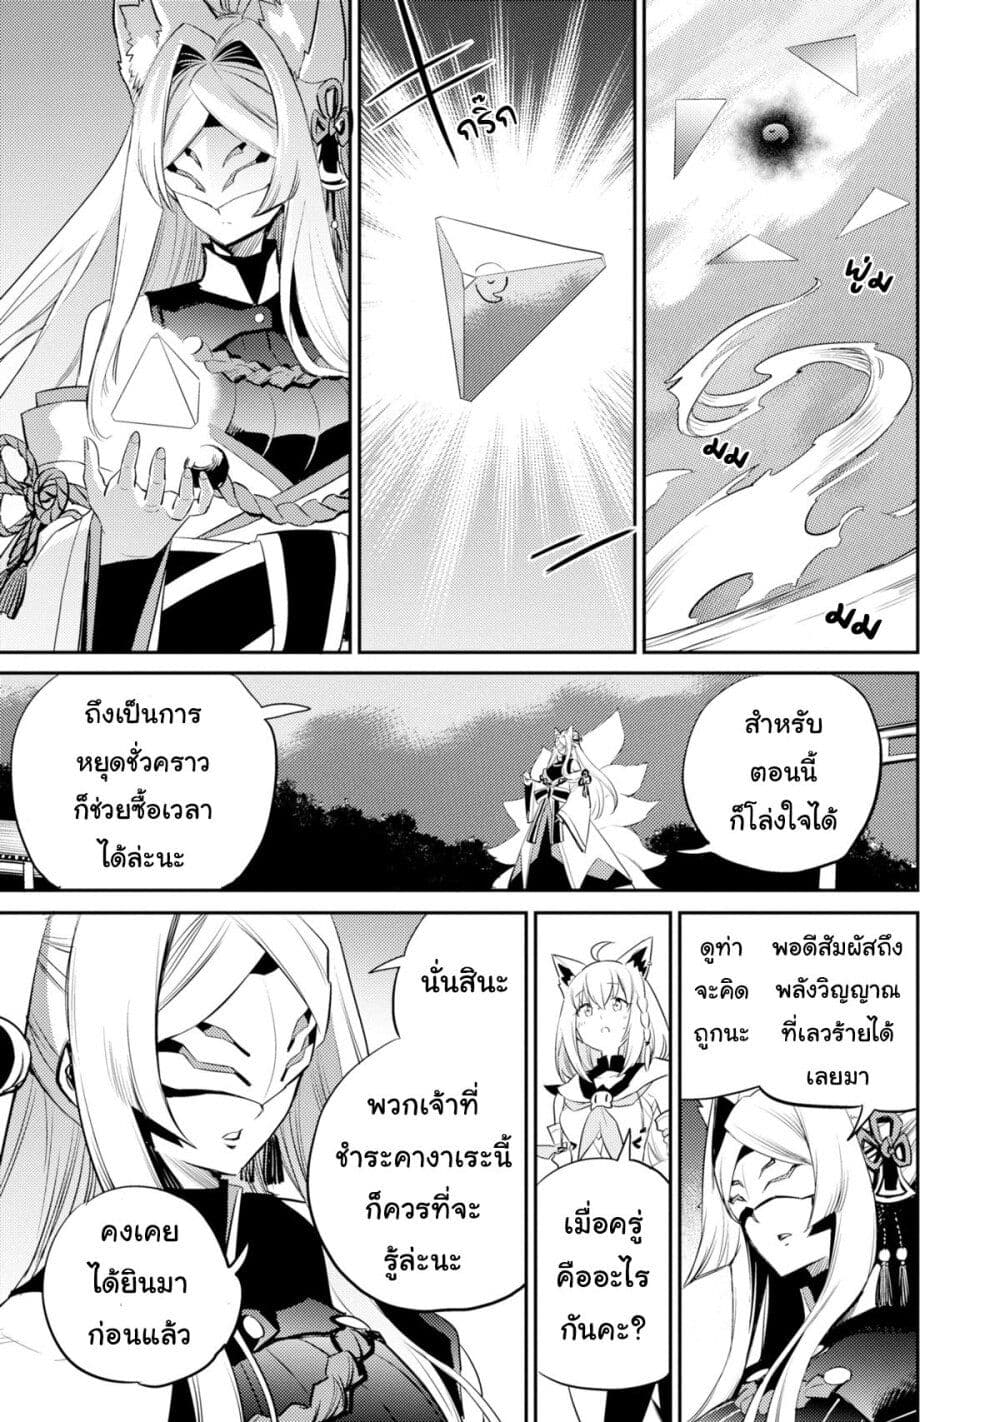 Holoearth Chronicles SideE ~Yamato Phantasia~ ตอนที่ 17 (17)